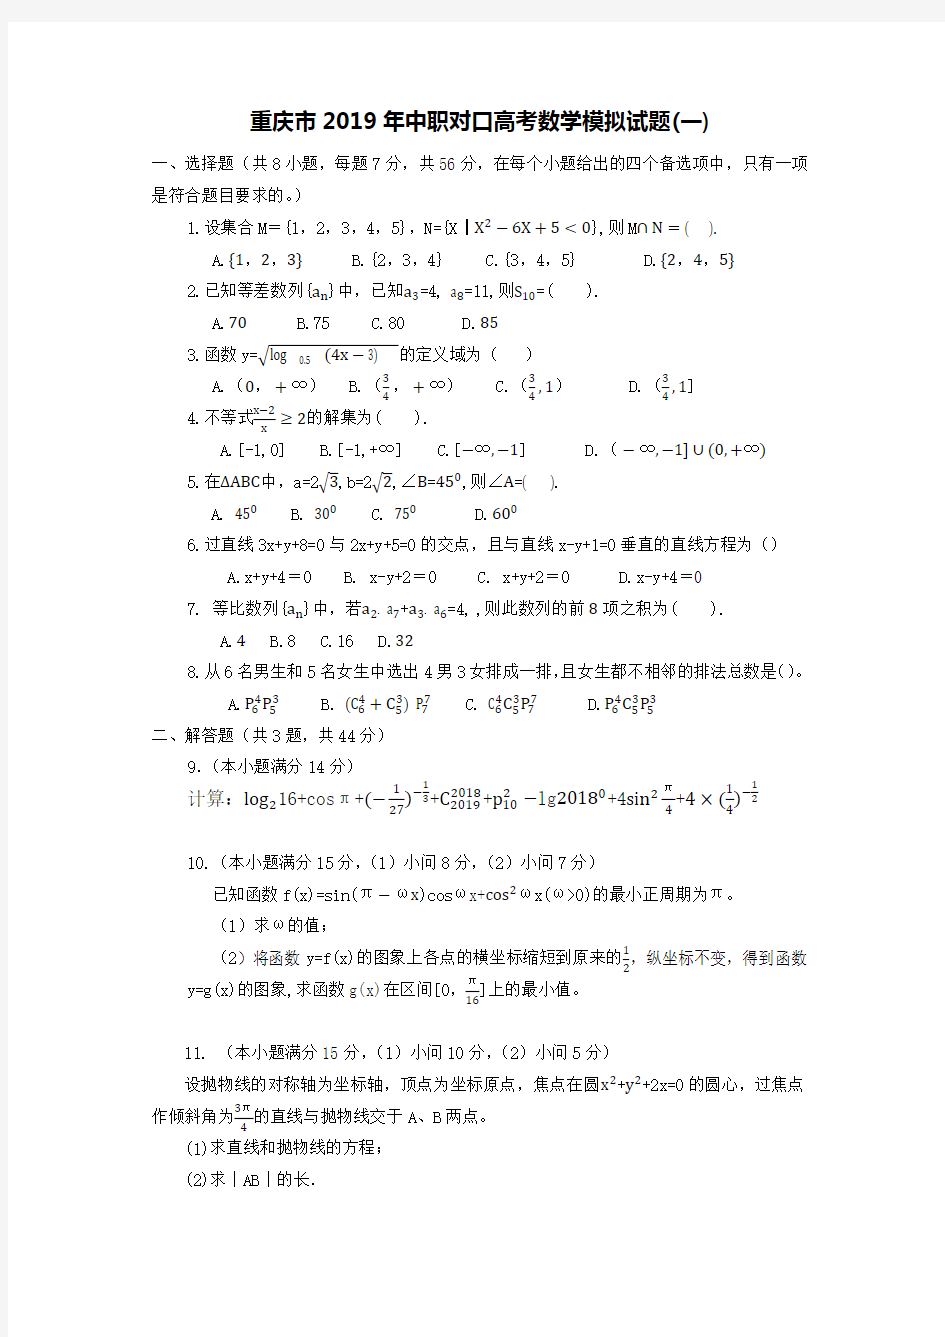 (完整版)重庆市2019年中职对口高考数学模拟试题(一)